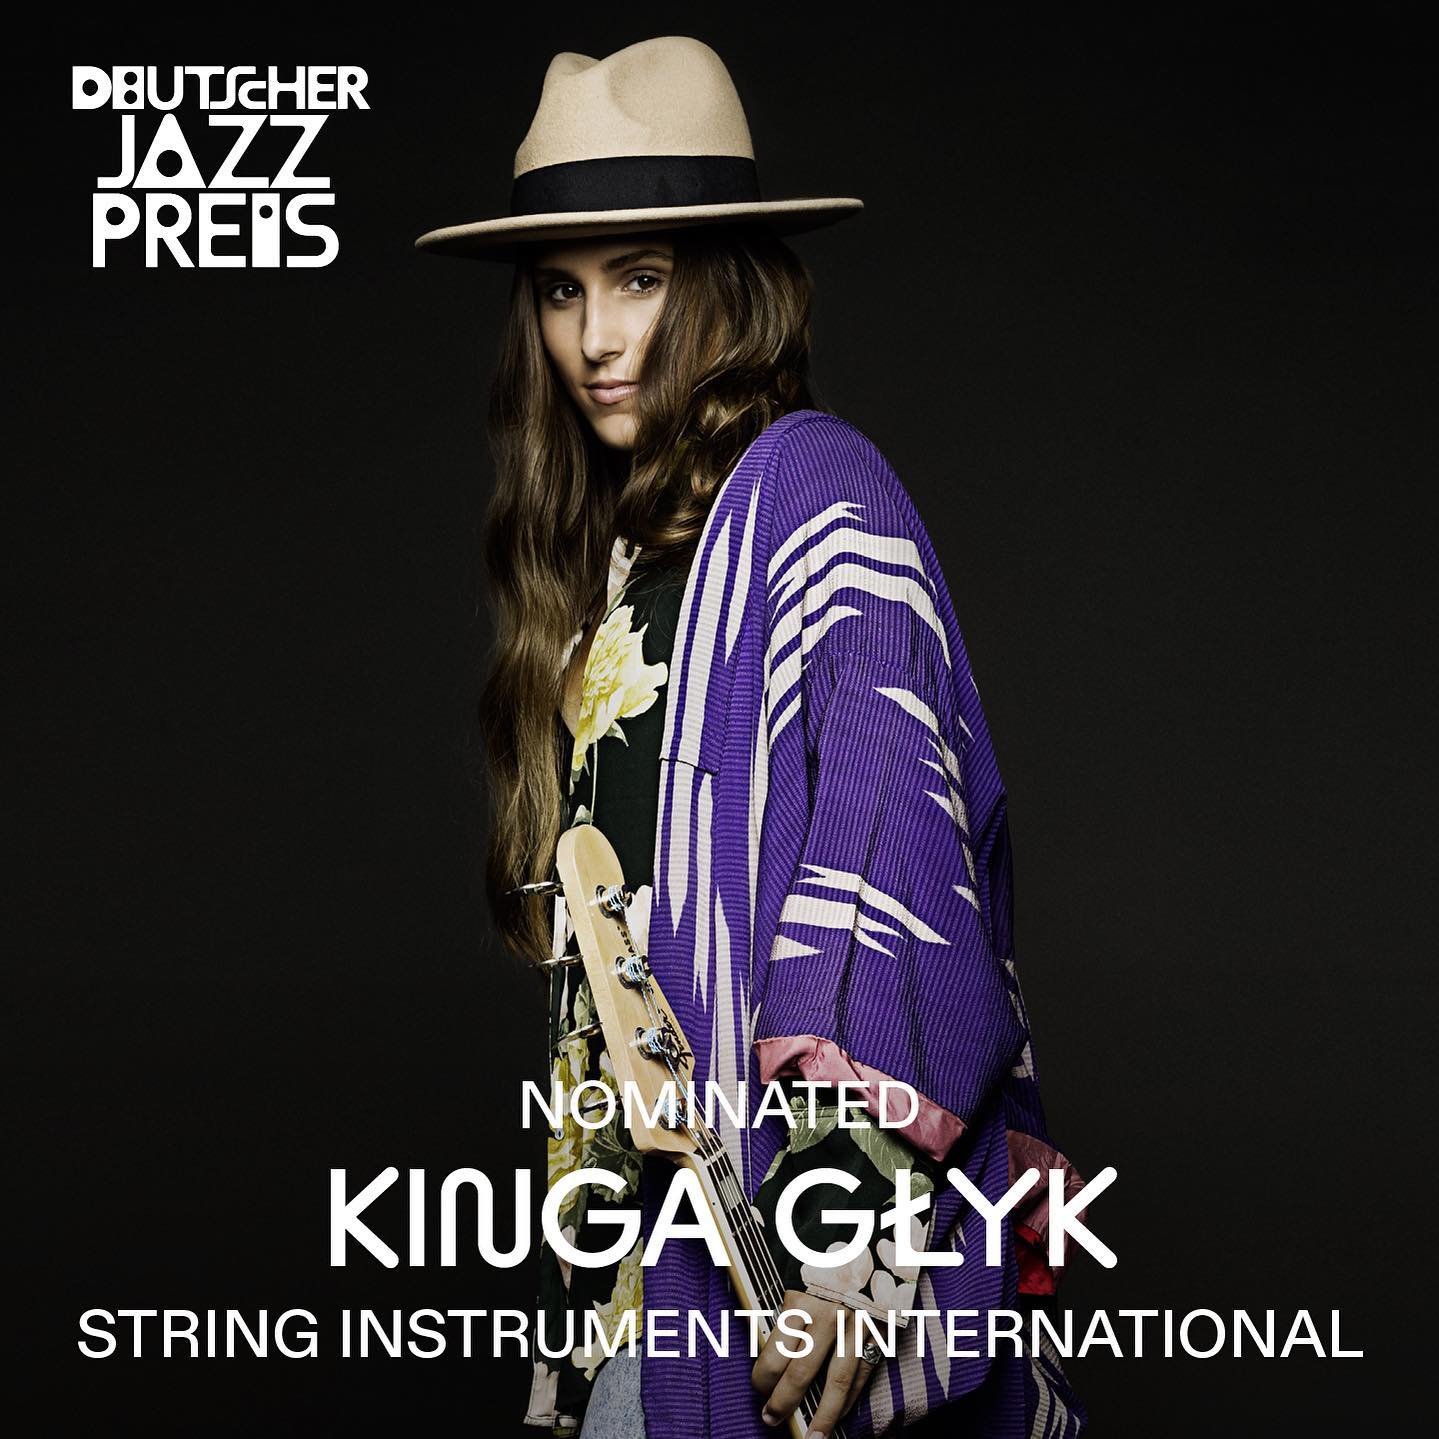 Wracając do 2021 roku, Kinga otrzymała nominację w kategorii „Instrumenty Strunowe Międzynarodowe” od Deutscher JAZZ PRESS, obok szanowanych muzyków takich jak Christian McBride i Wolfgang Muthspiel. Otrzymała również prestiżową nagrodę „Koryfeusz Muzyki Polskiej”.